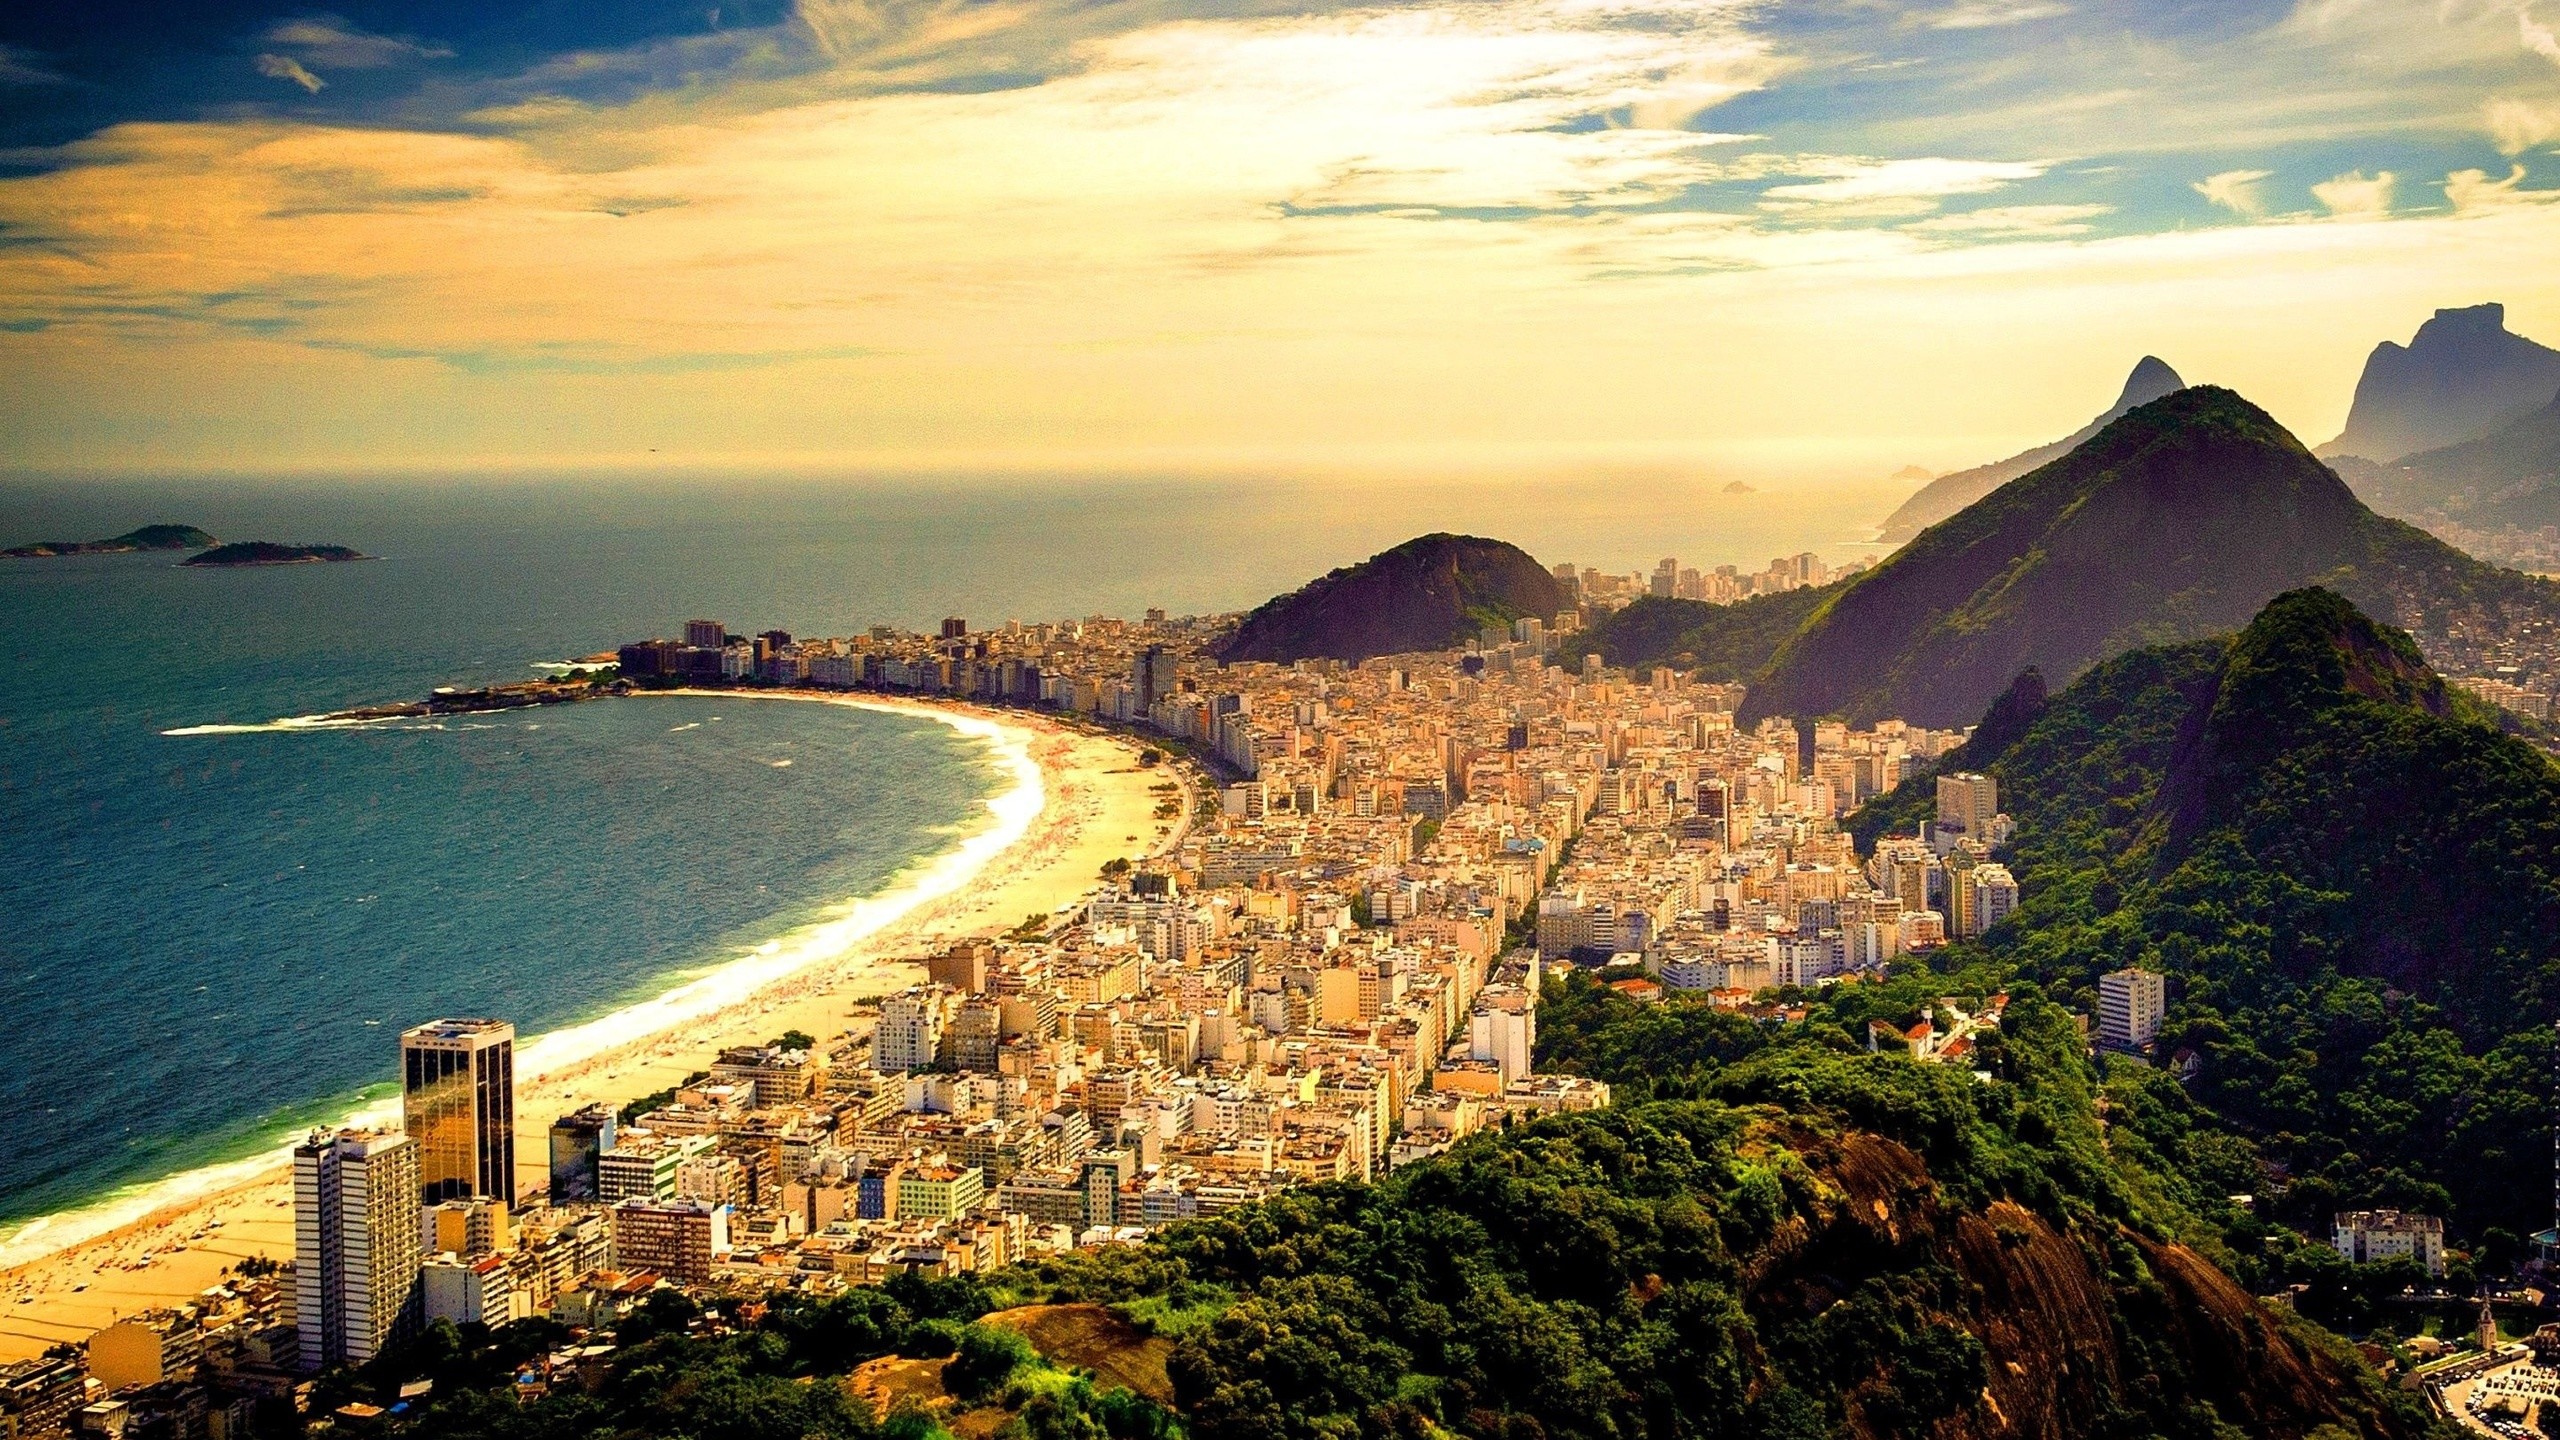 2560x1440  Rio De Janeiro, Rio De Janeiro Hd Wallpaper, Travel To Rio De  Janeiro, Rio De Janeiro Images, Rio De Janeiro Hd, Rio De Janeiro 4k, ...